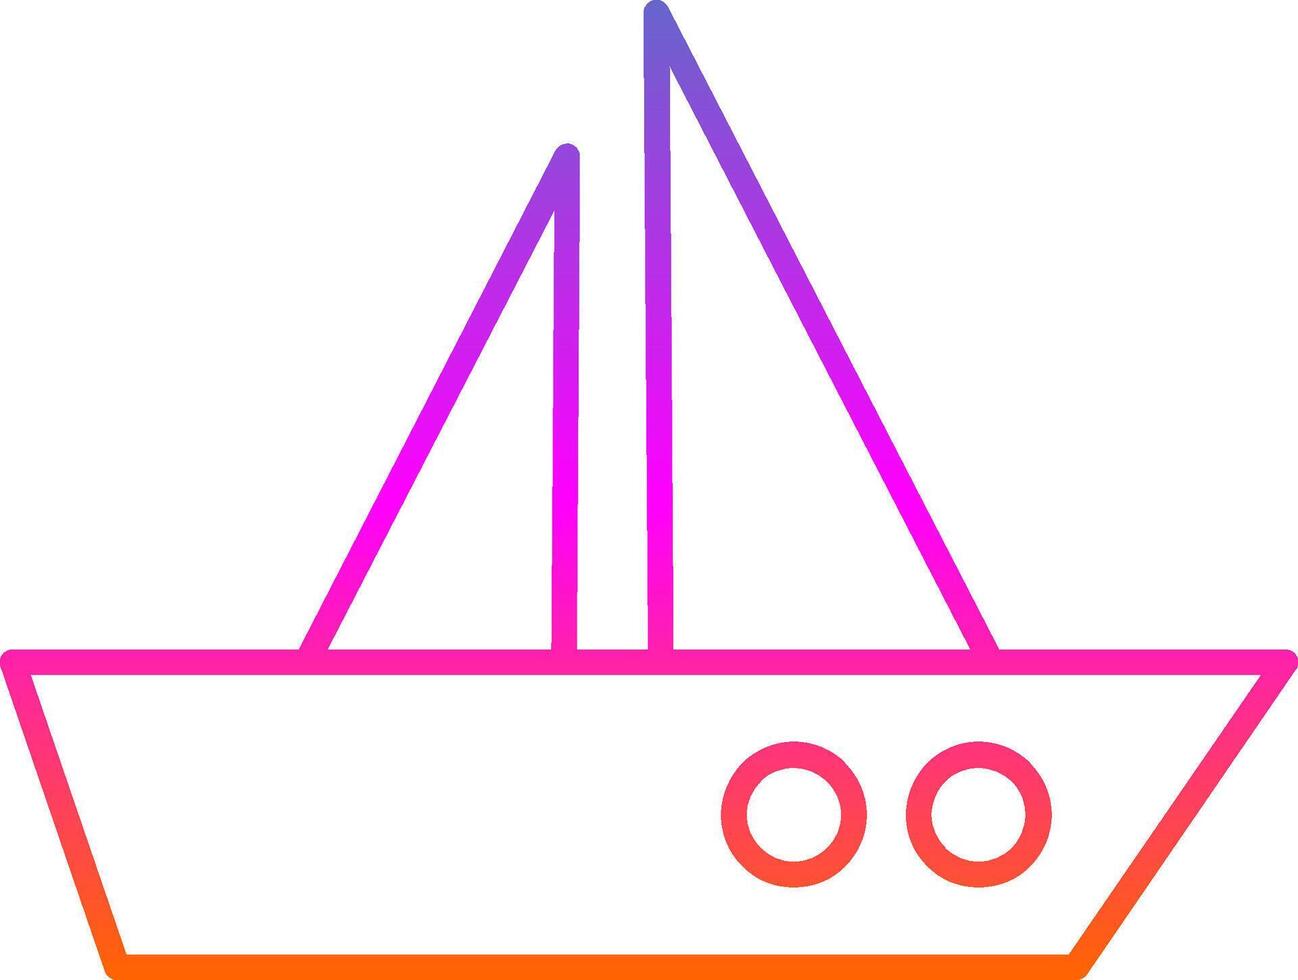 Boat Line Gradient Icon vector